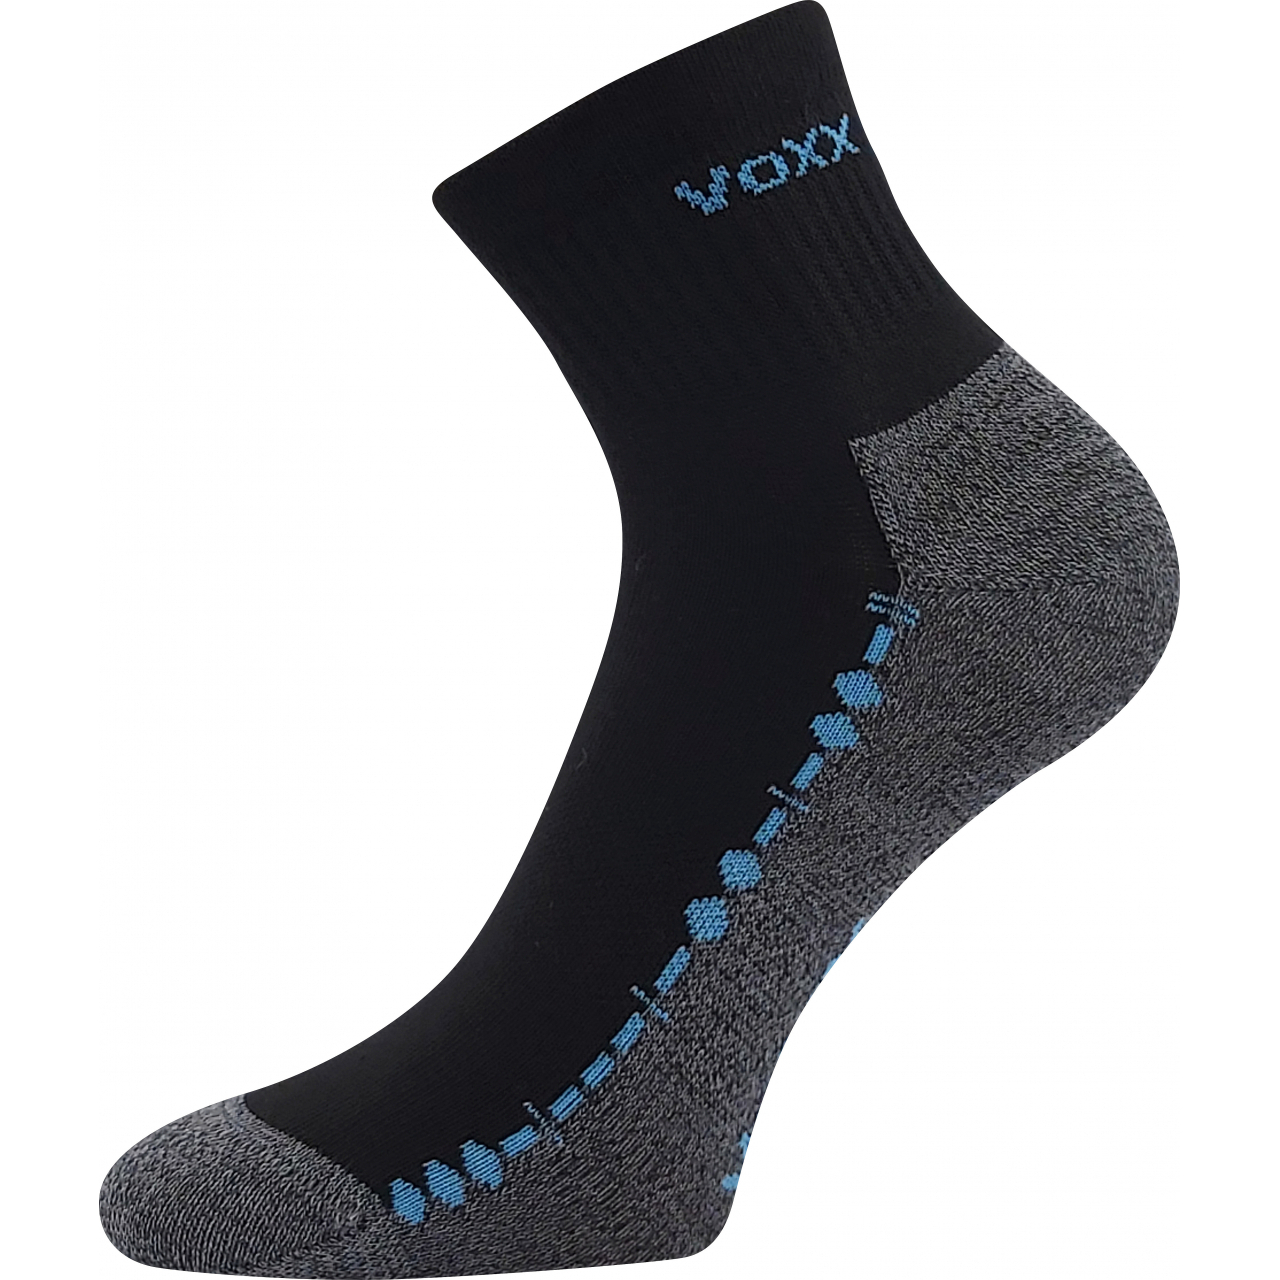 Ponožky unisex sportovní Voxx Vector - černé, 43-46